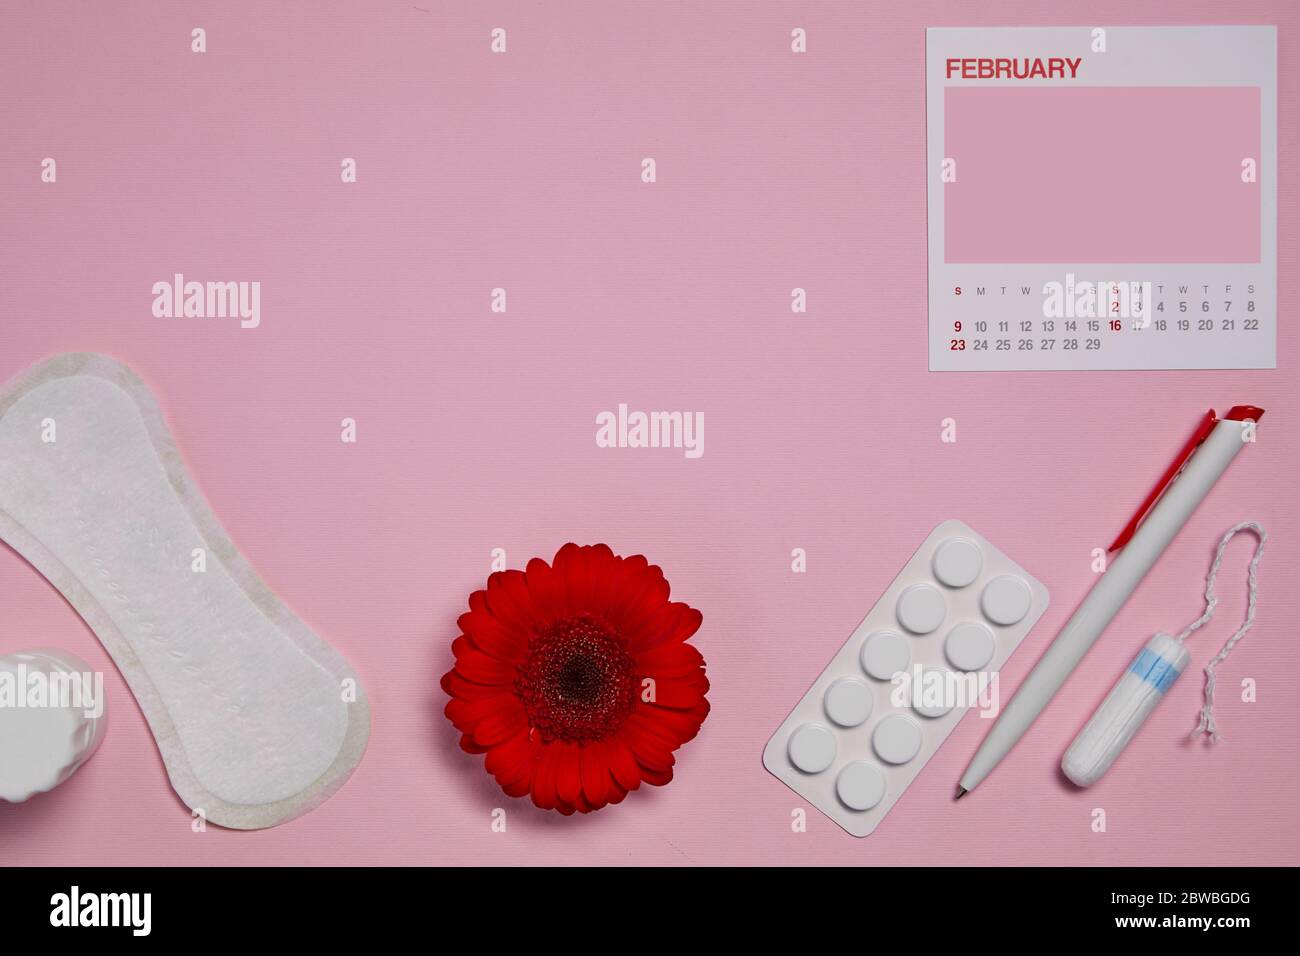 tampon hygiénique menstruel, tampon, pilules de douleur pendant les règles  et fleur rouge sur fond rose, calendrier féminin avec espace de copie.  Produits d'hygiène féminine. Vue du dessus. Maquette Photo Stock -